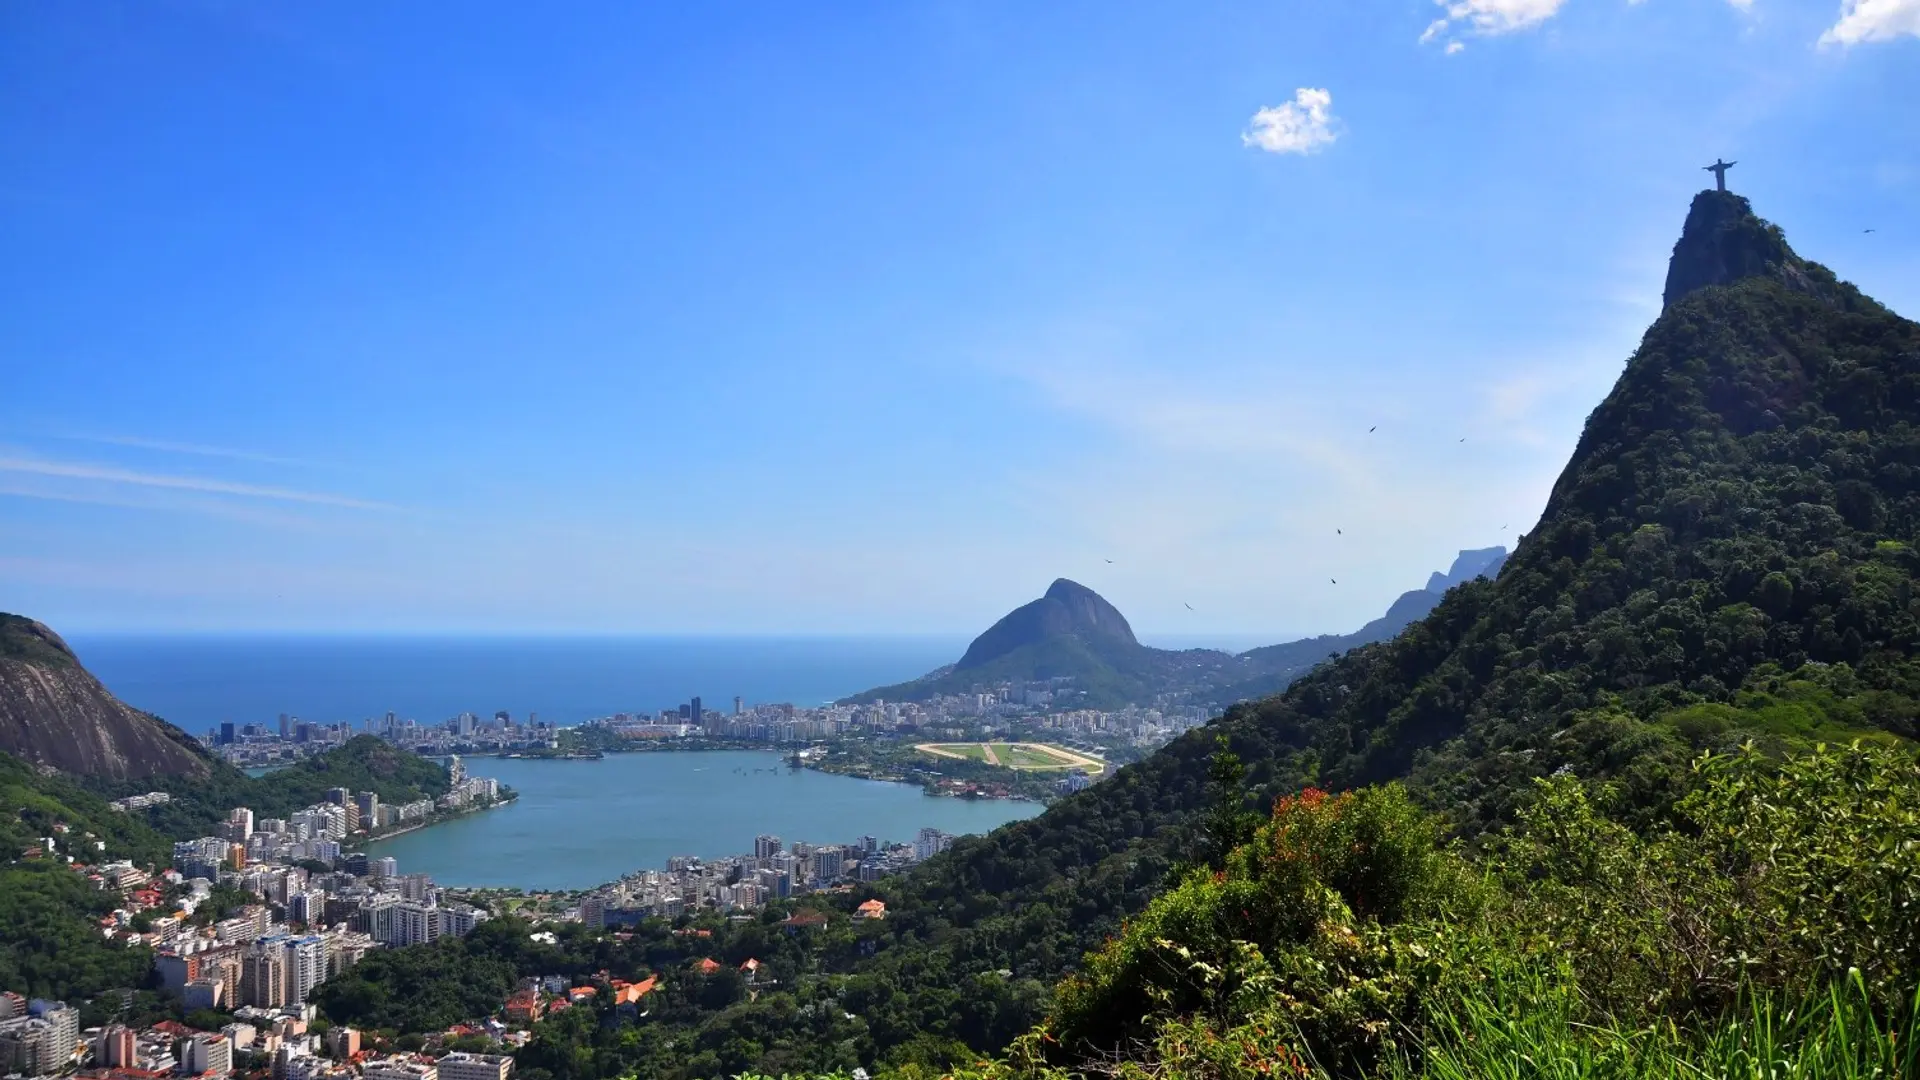 Destinations Articles - Rio de Janeiro Travel Guide